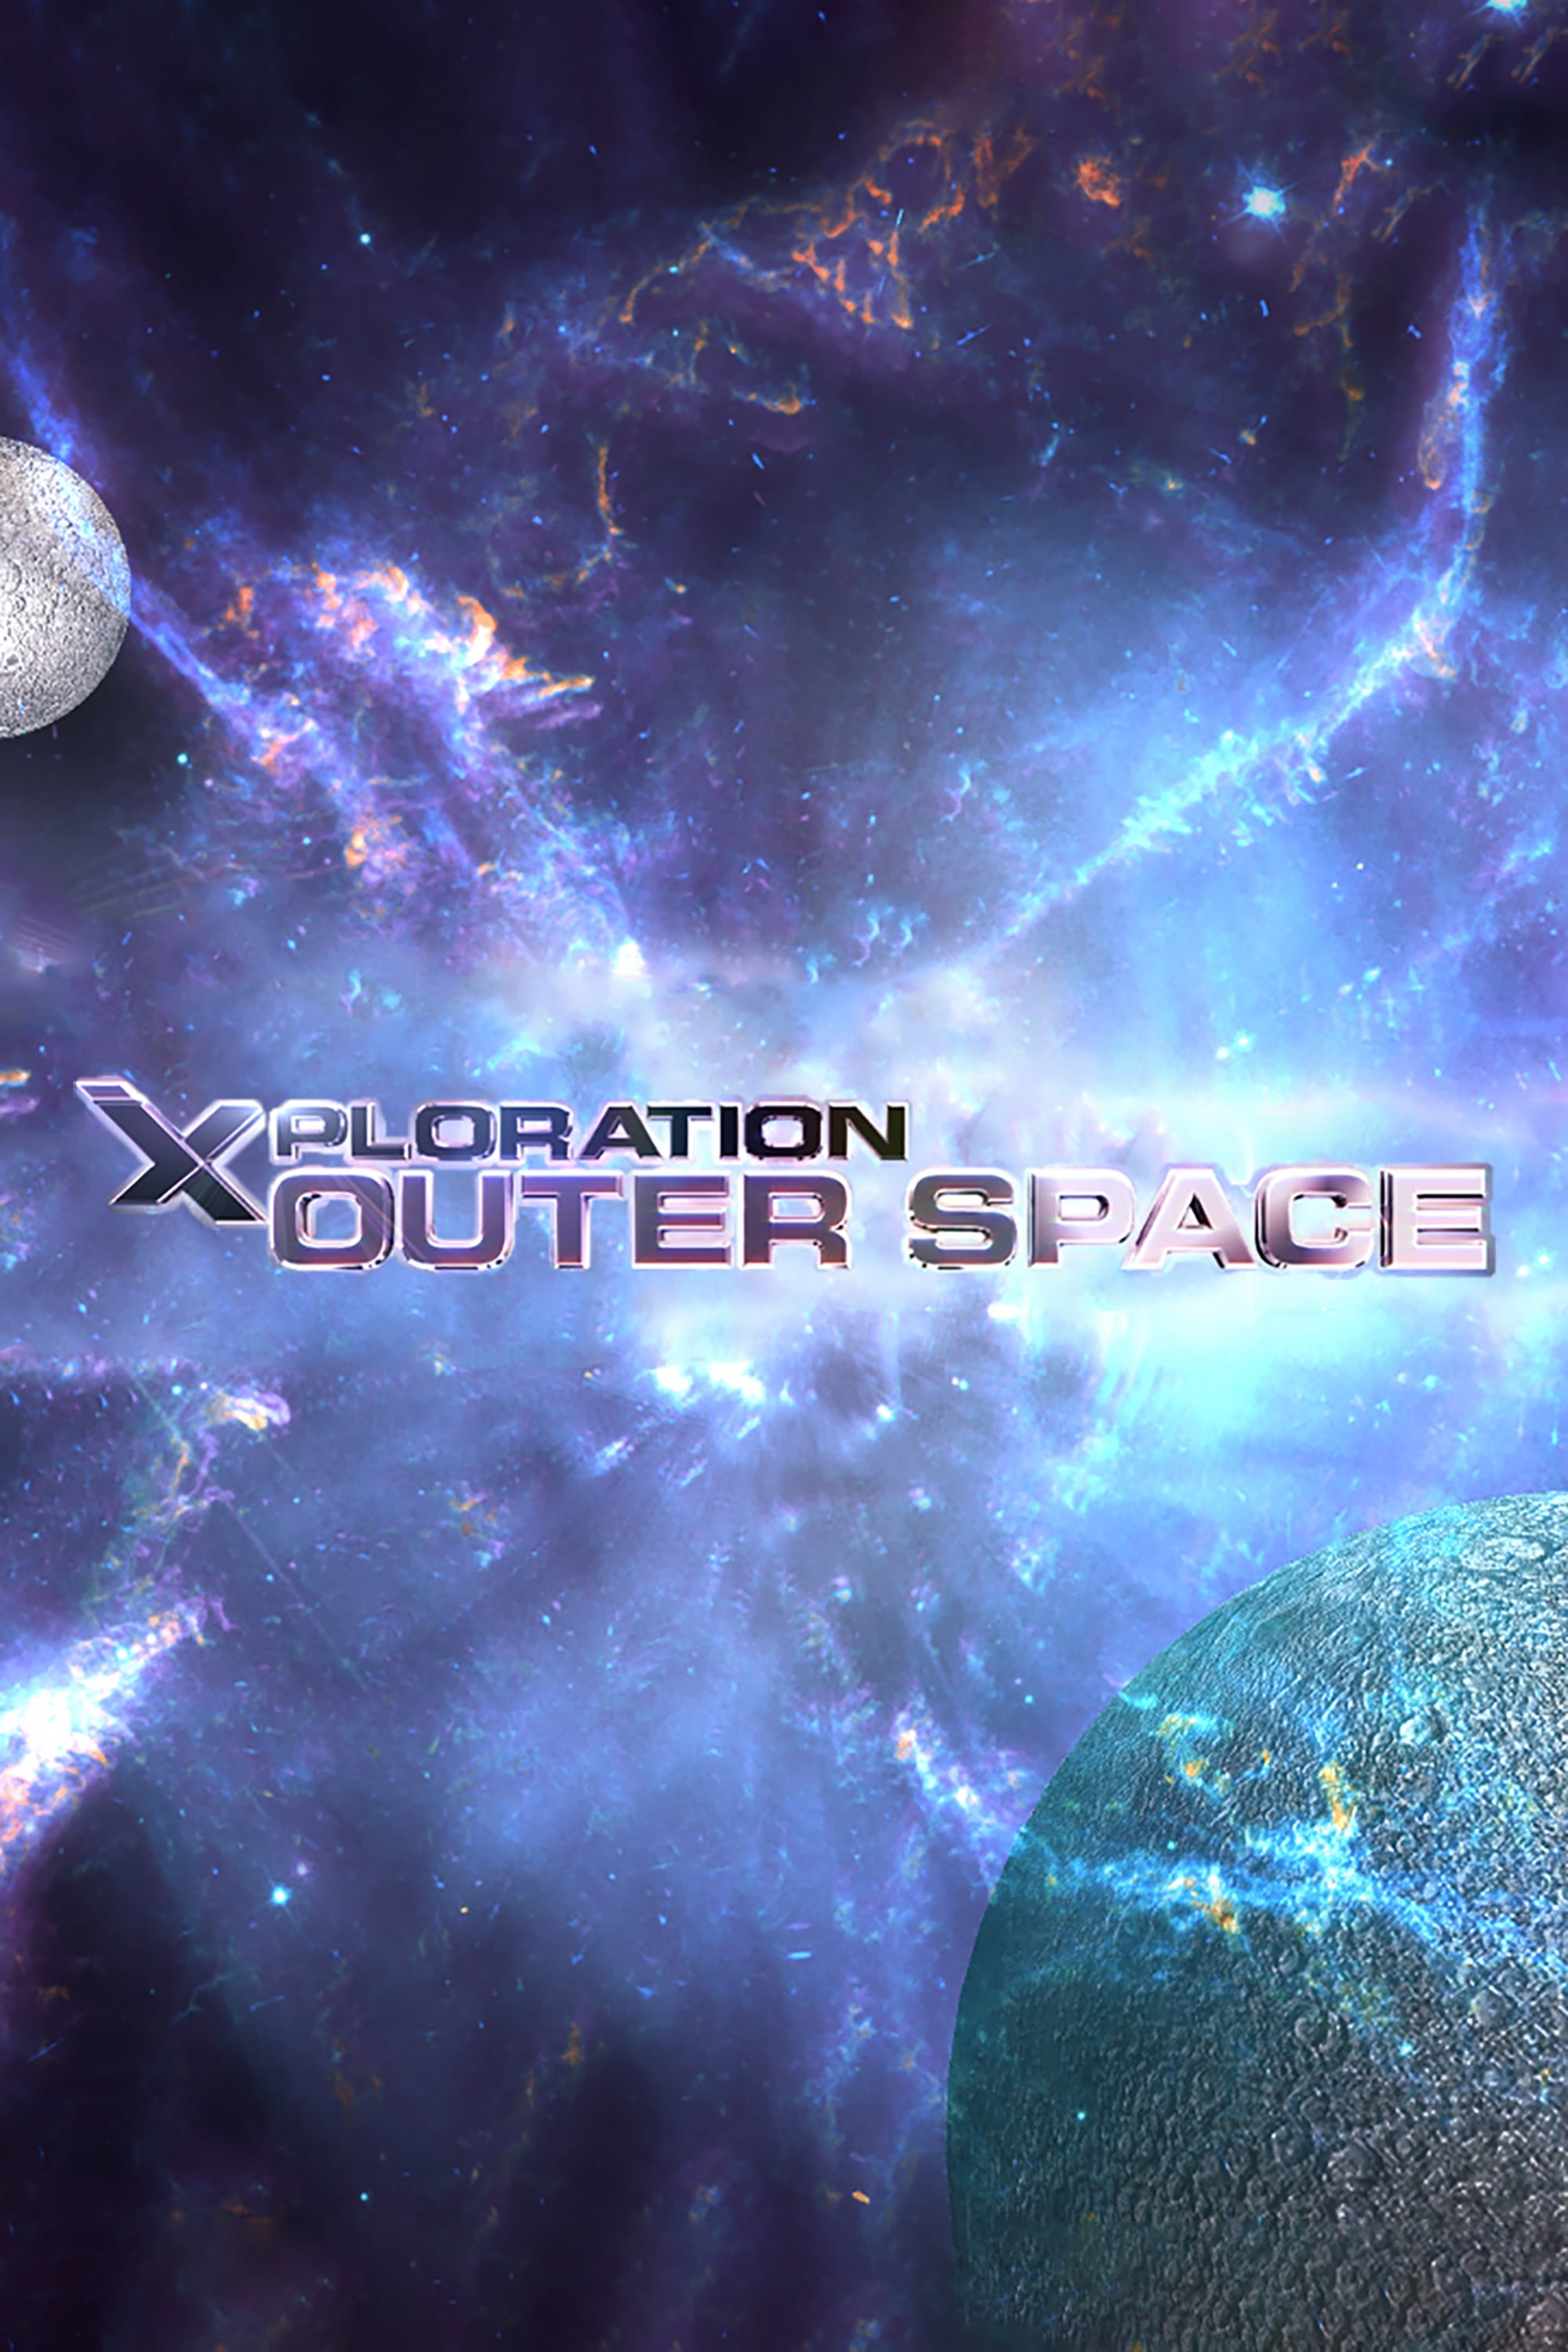 Xploration Outer Space TV Shows About Exploration